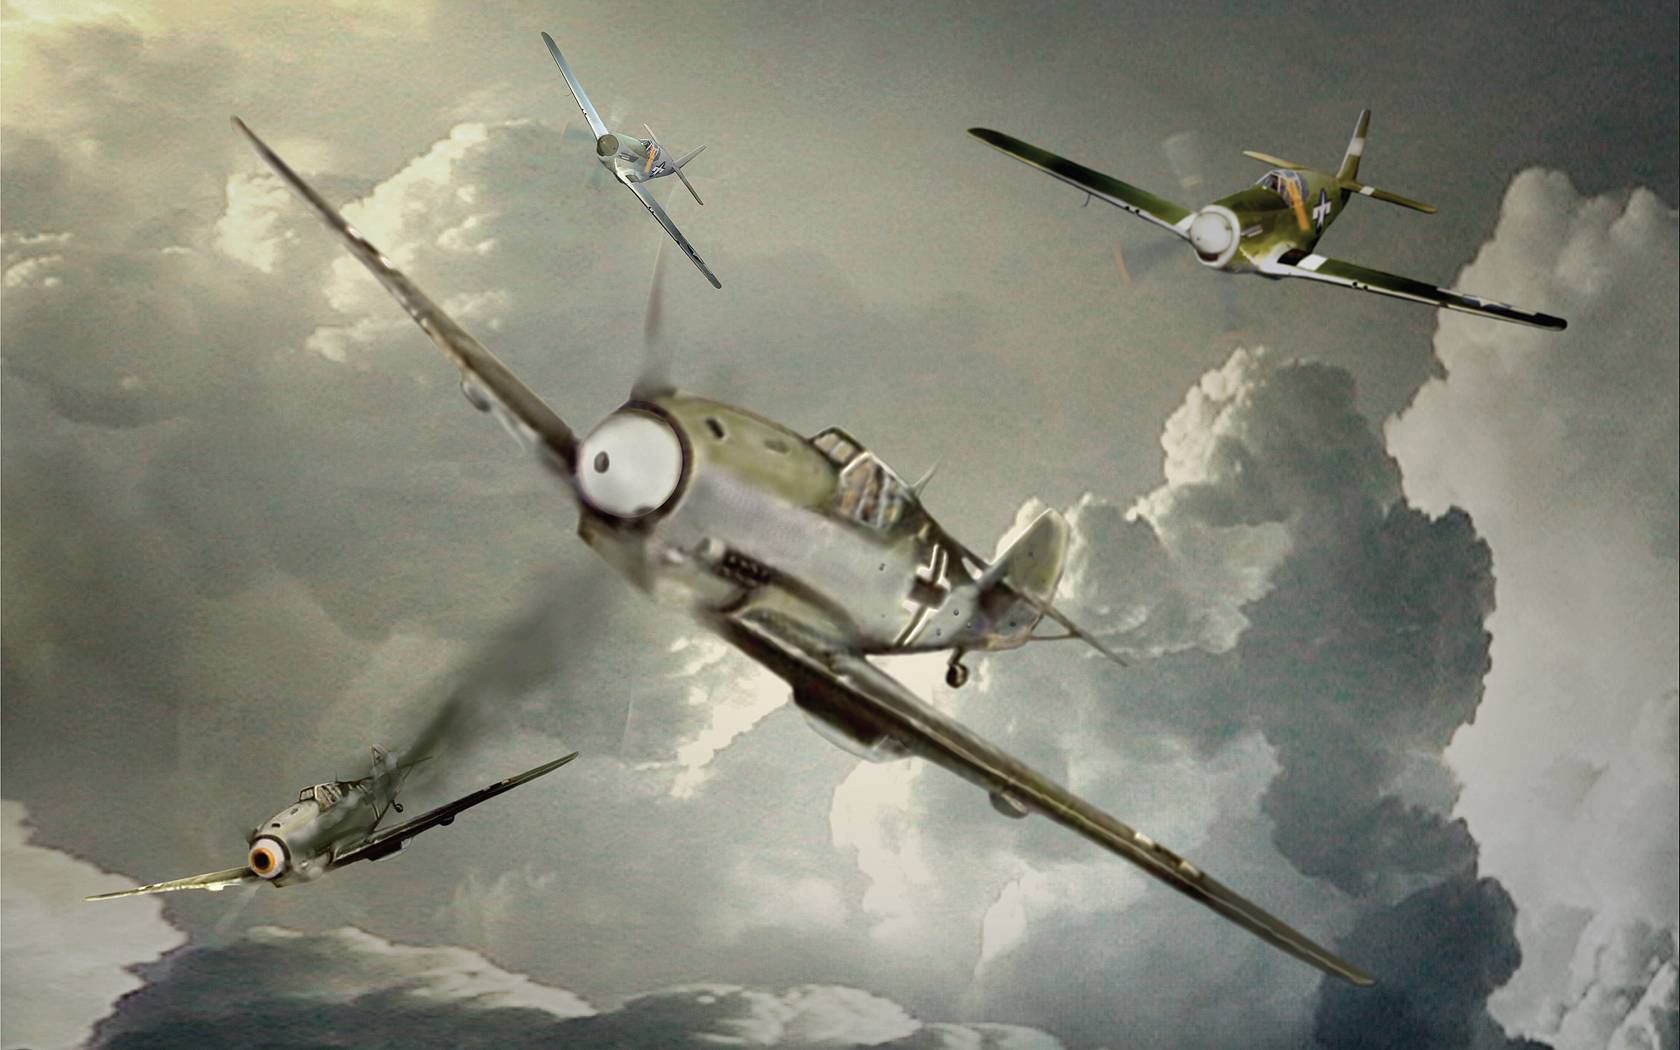 Aircraft artistic world war ii wallpaper - - High Quality